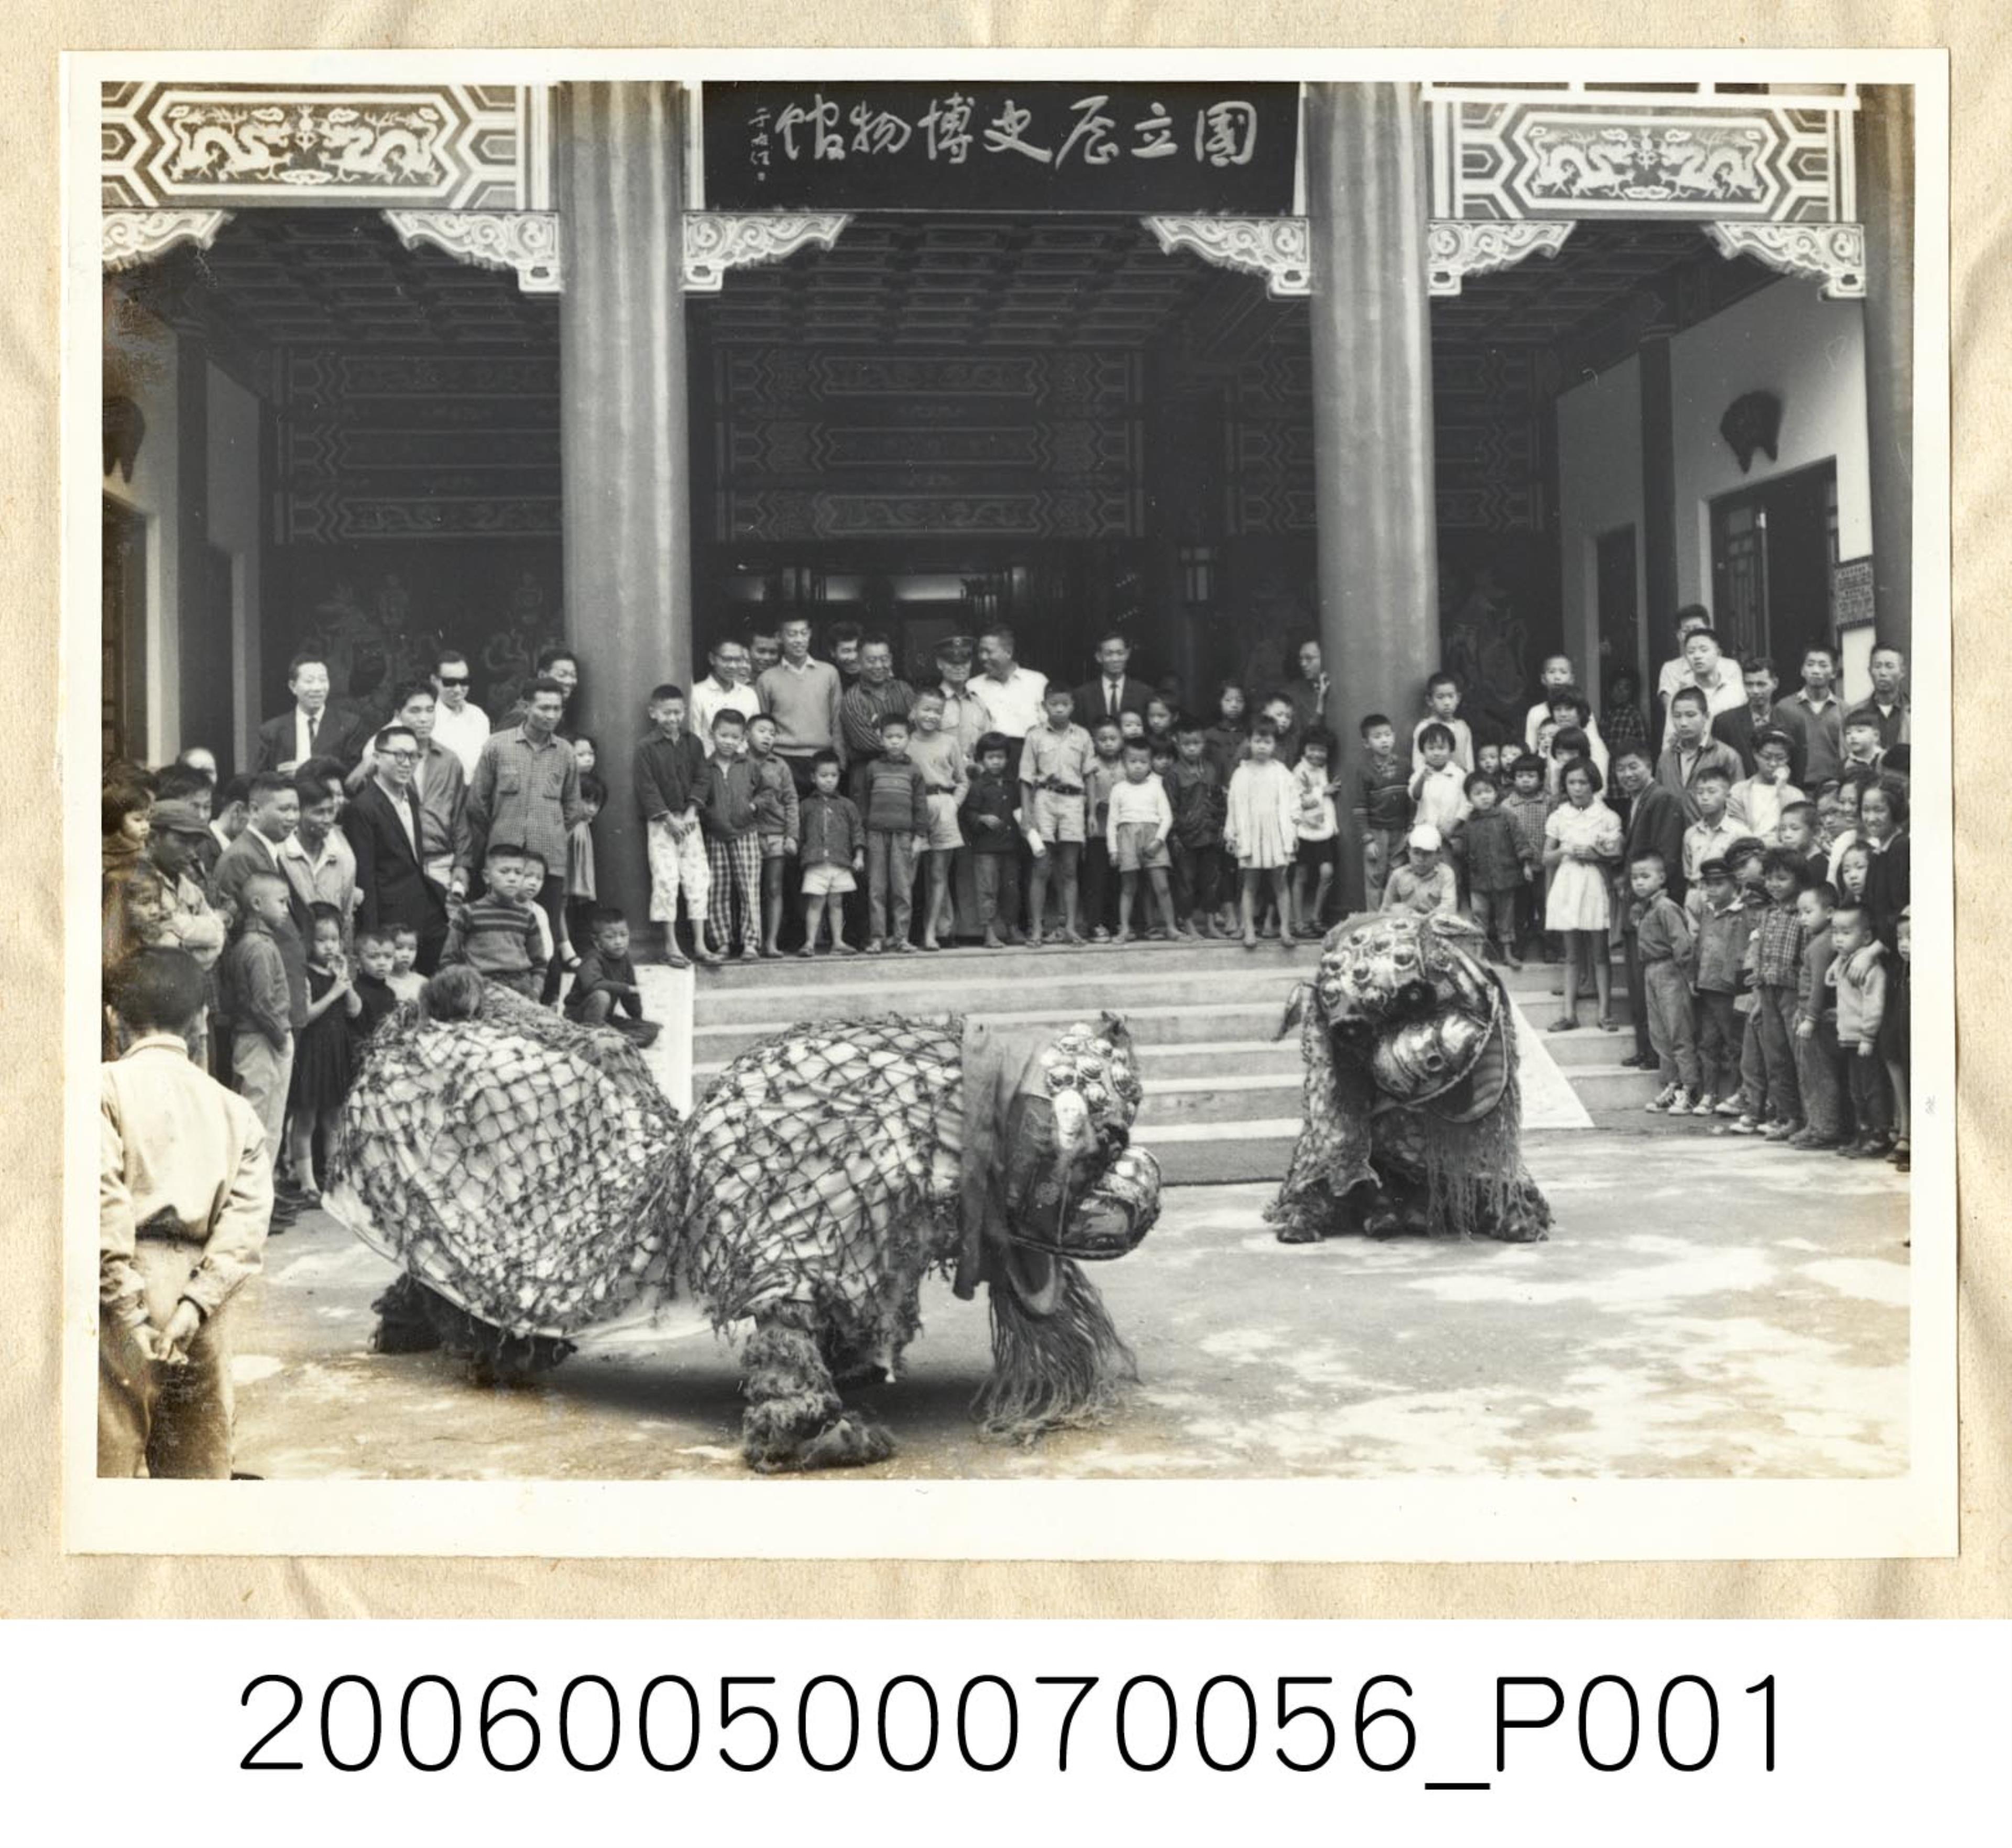 《華僑通訊社新聞照片集》〈臺北民間團體舞獅迎接辳曆新年〉 (共1張)